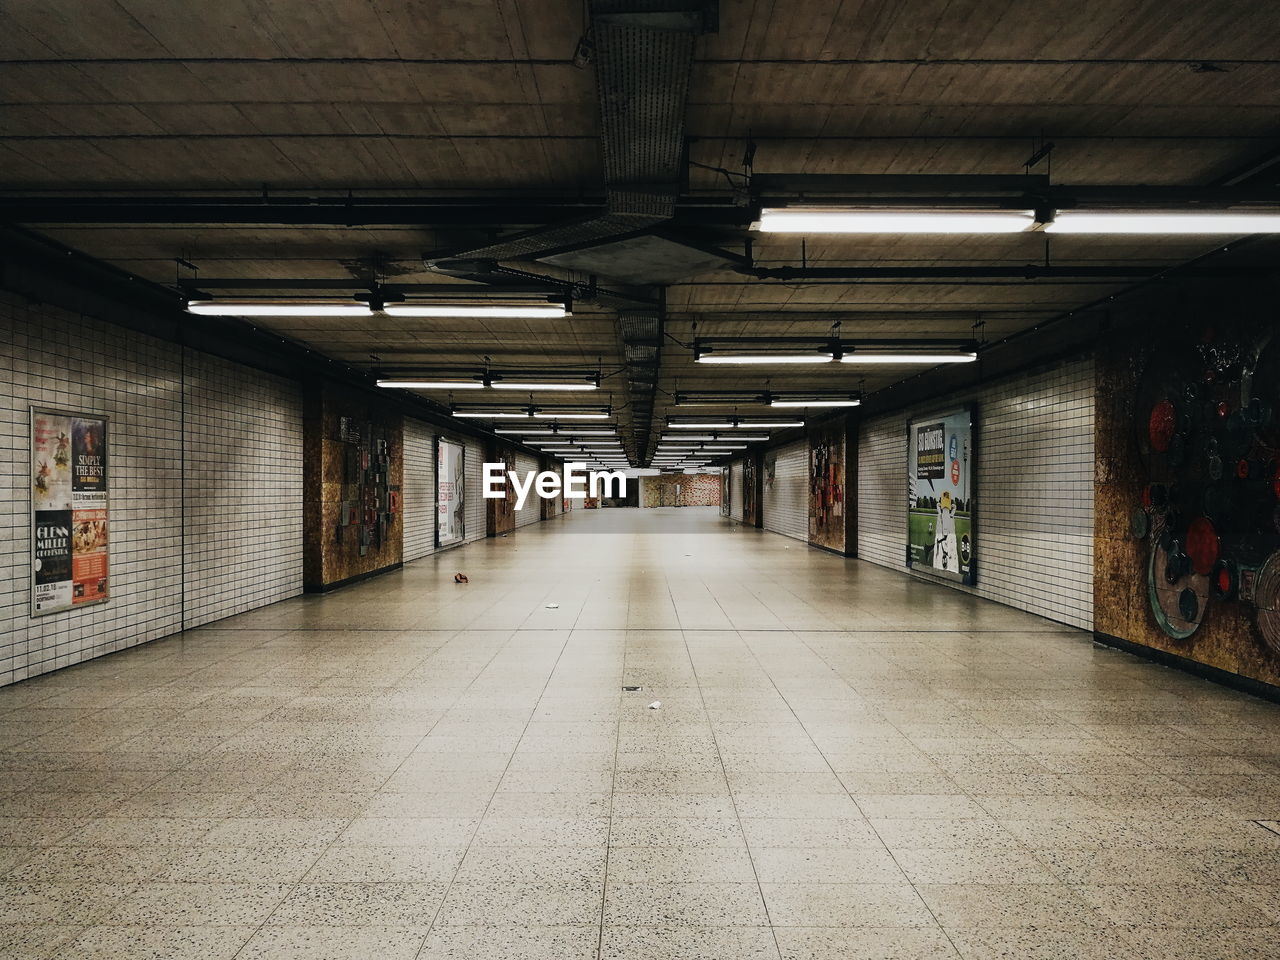 Empty illuminated subway tunnel